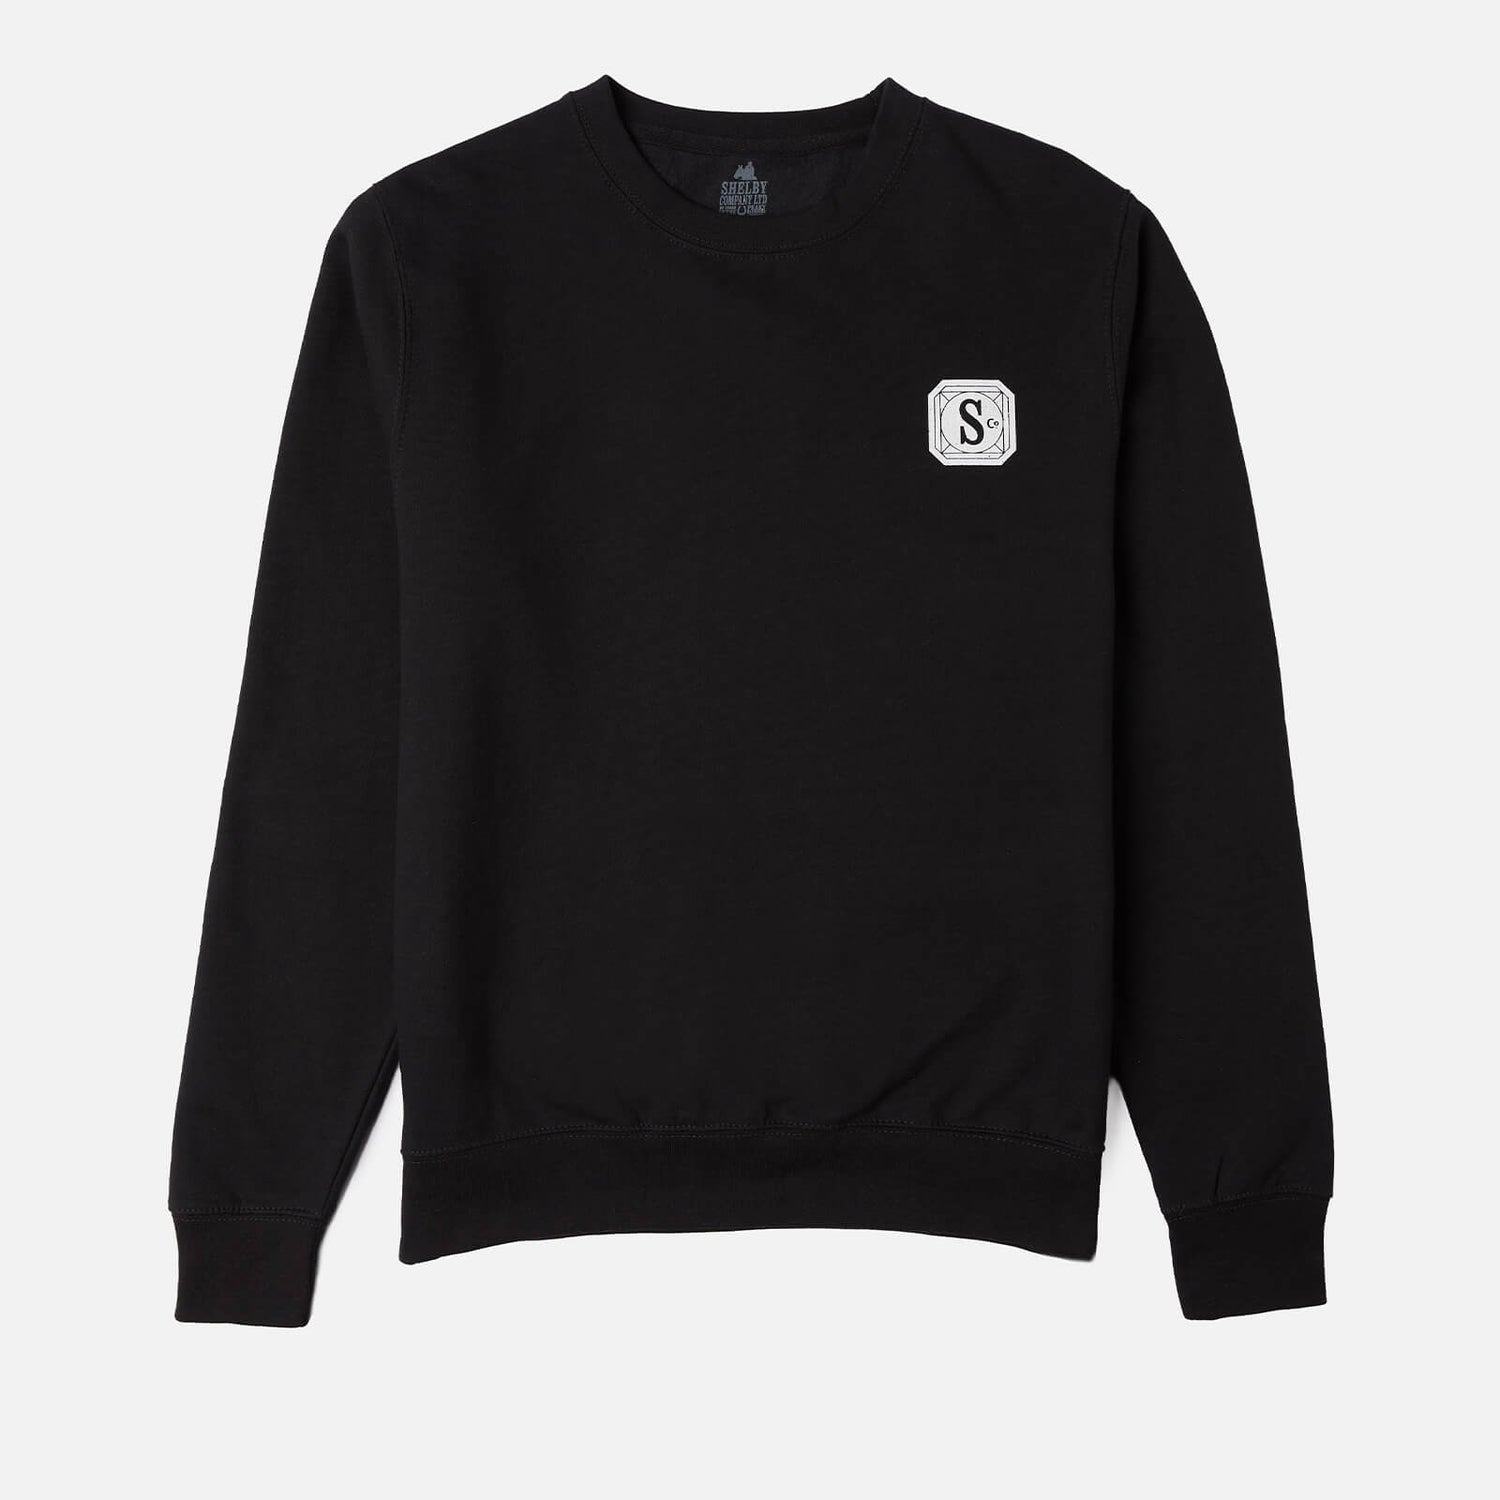 Peaky Blinders Shelby Co. Ltd Sweatshirt - Black